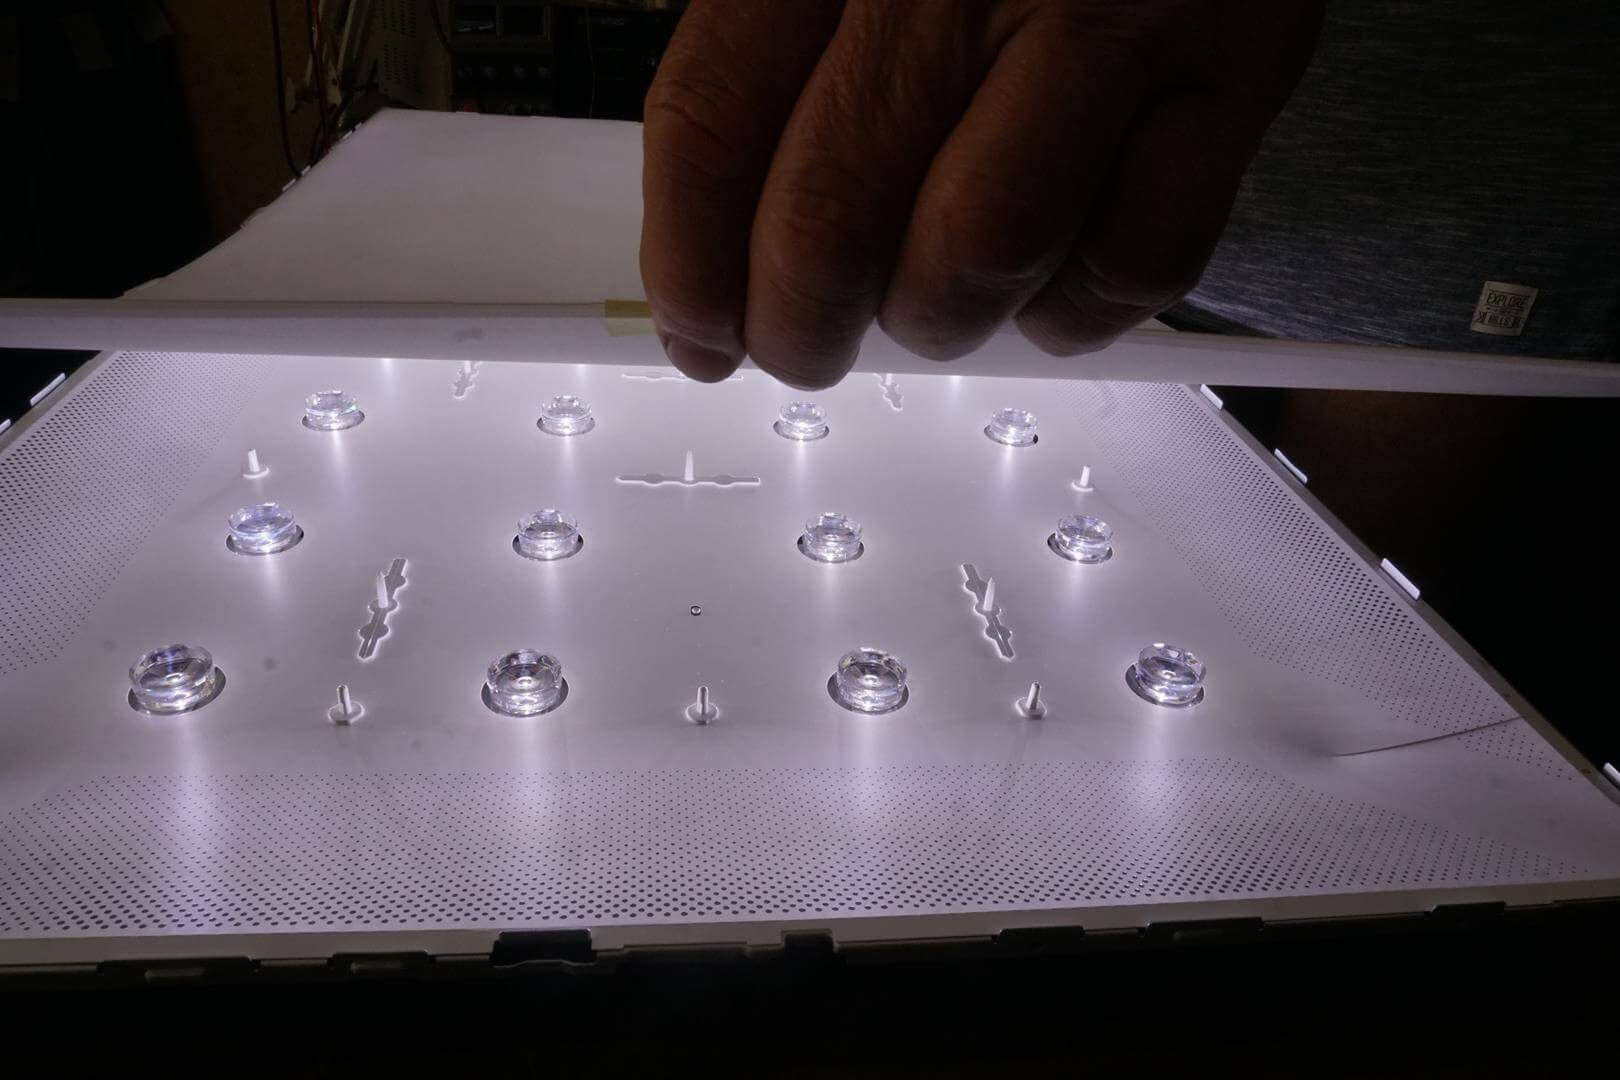 Светодиоды подсветки телевизоров лед